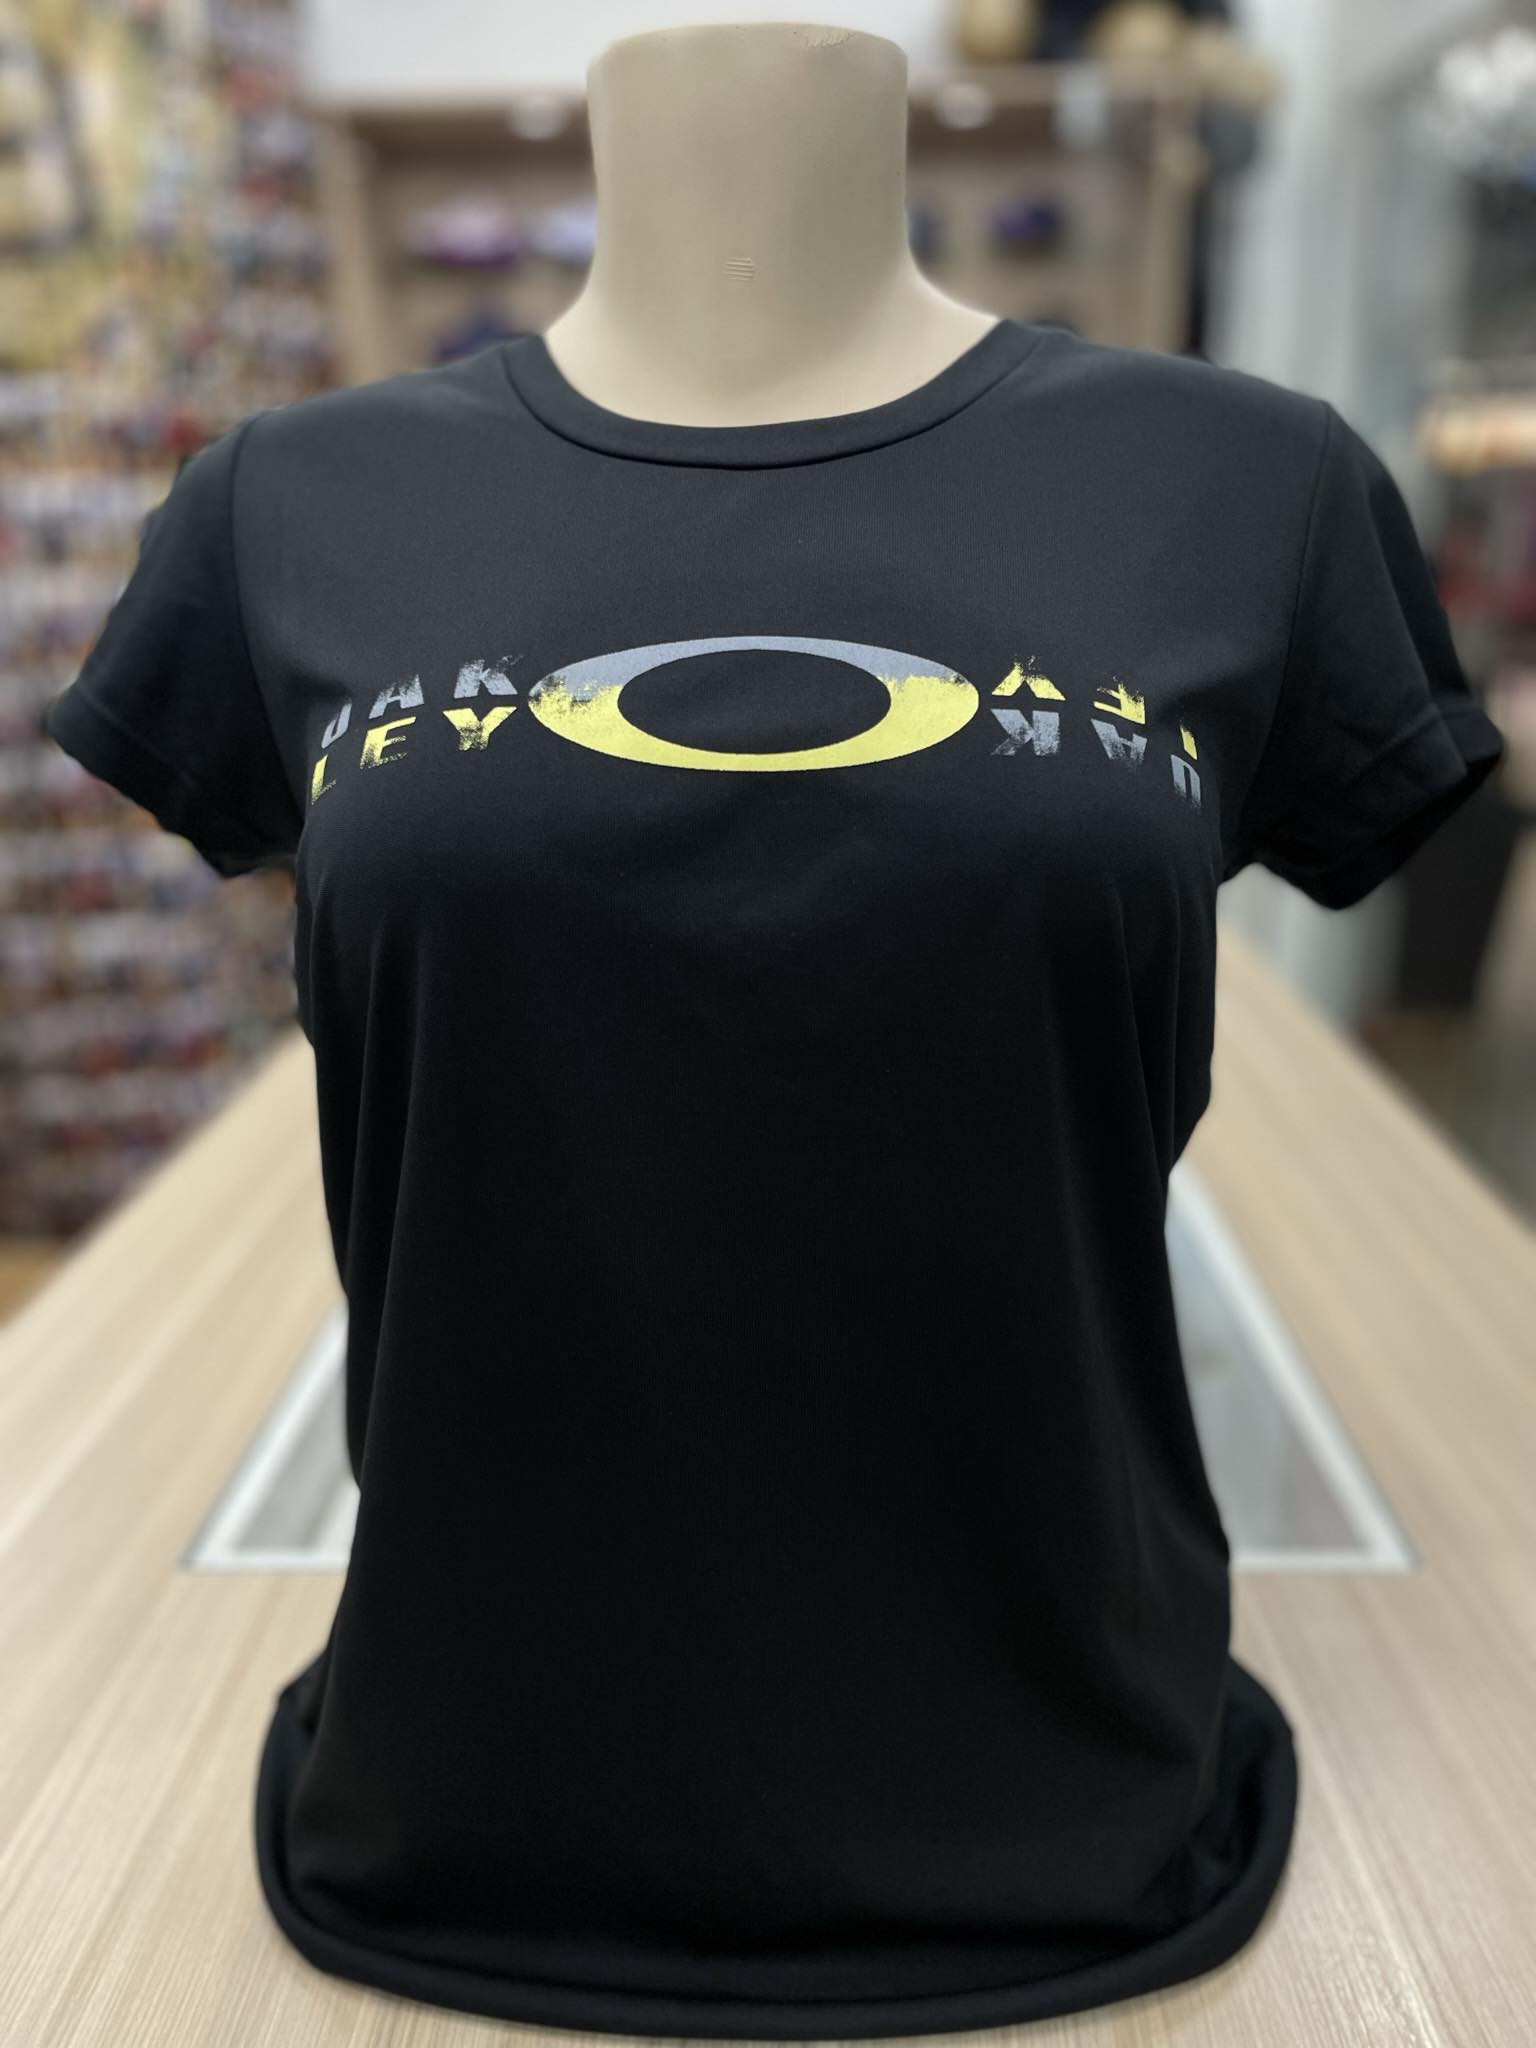 Camisa Da Oakley Feminina